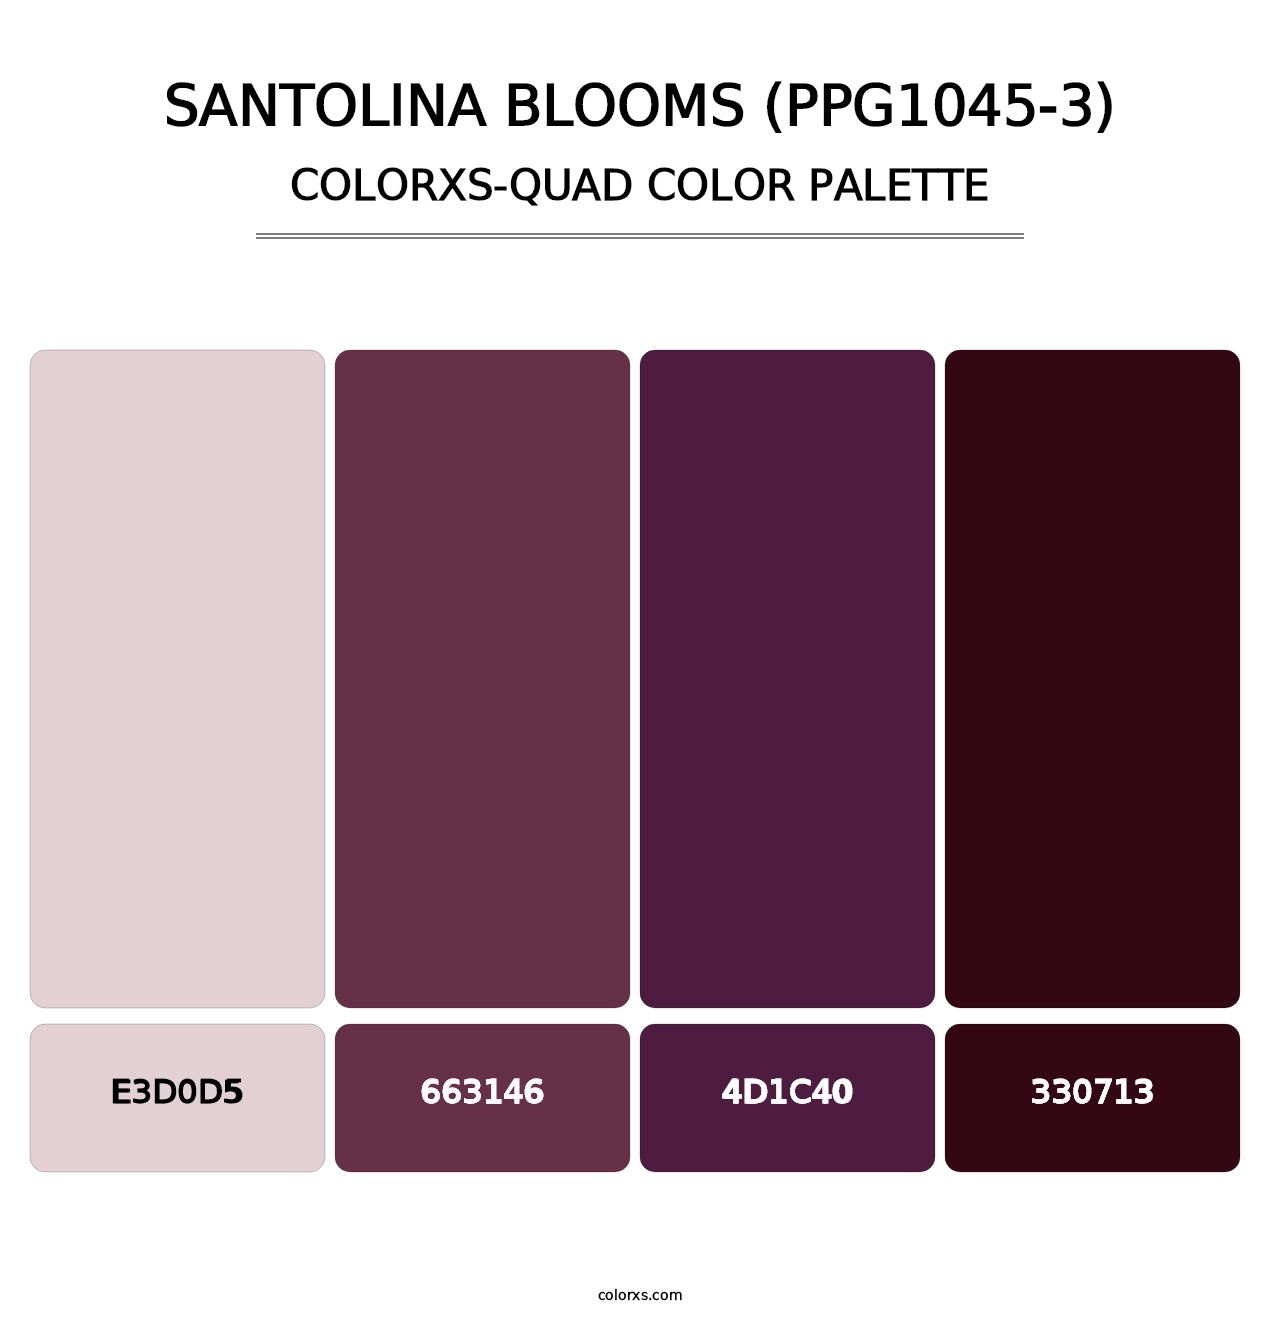 Santolina Blooms (PPG1045-3) - Colorxs Quad Palette